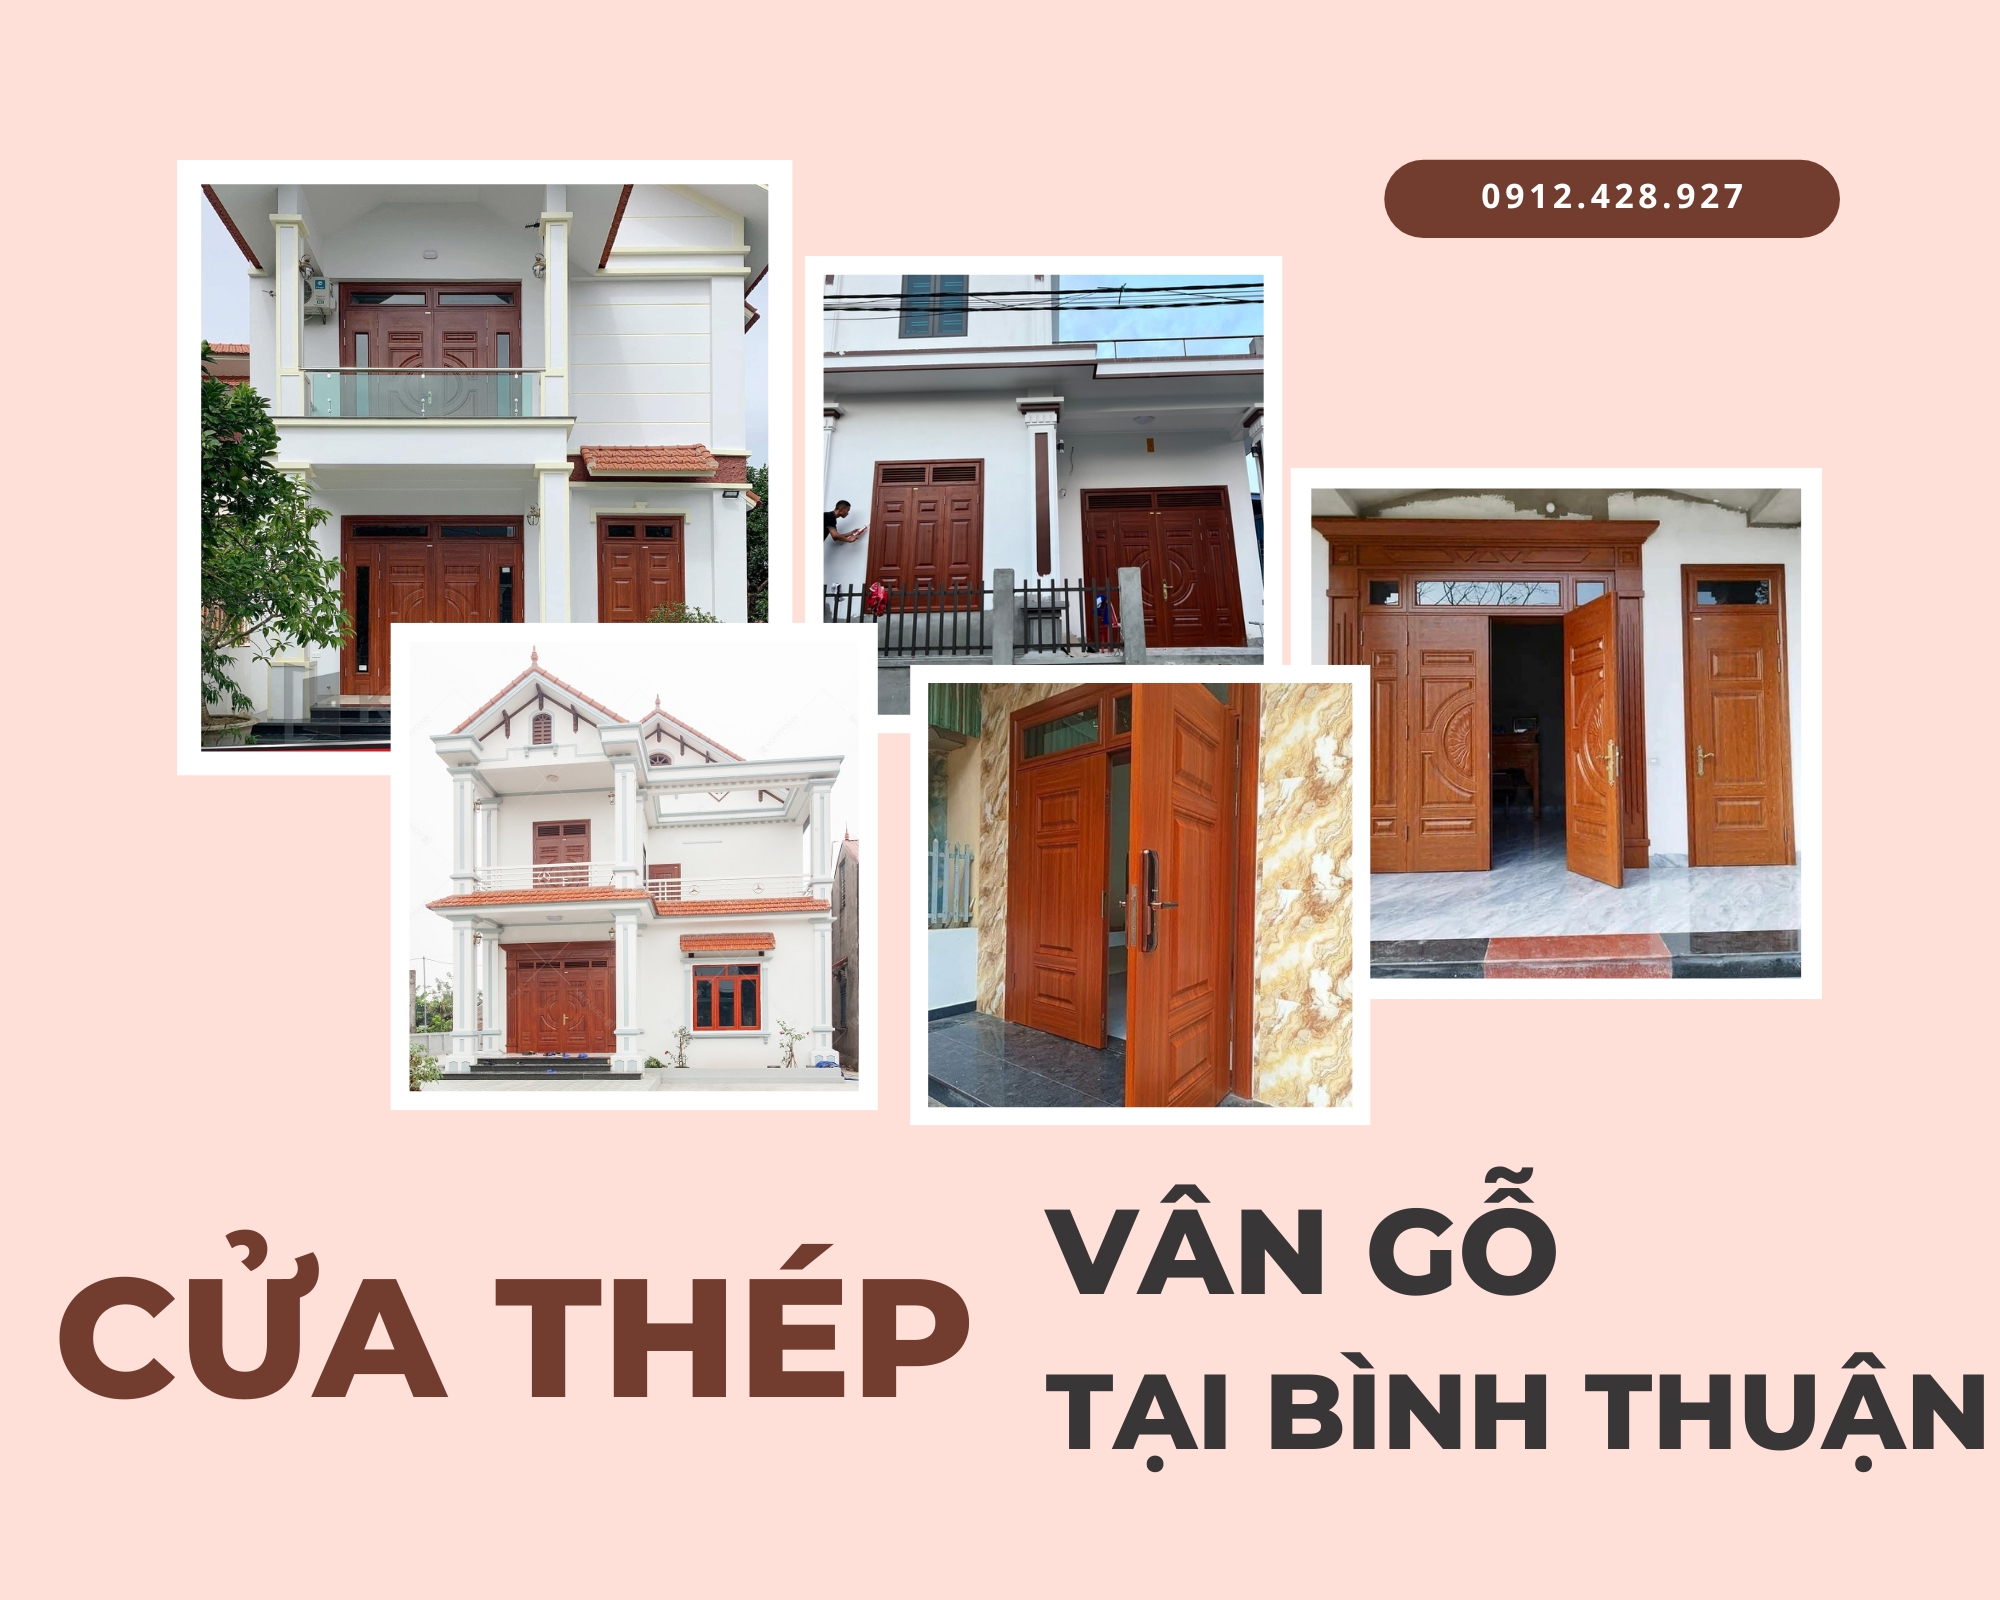 Cửa Thép Vân Gỗ tại Bình Thuận  Uy Tín Chất Lượng